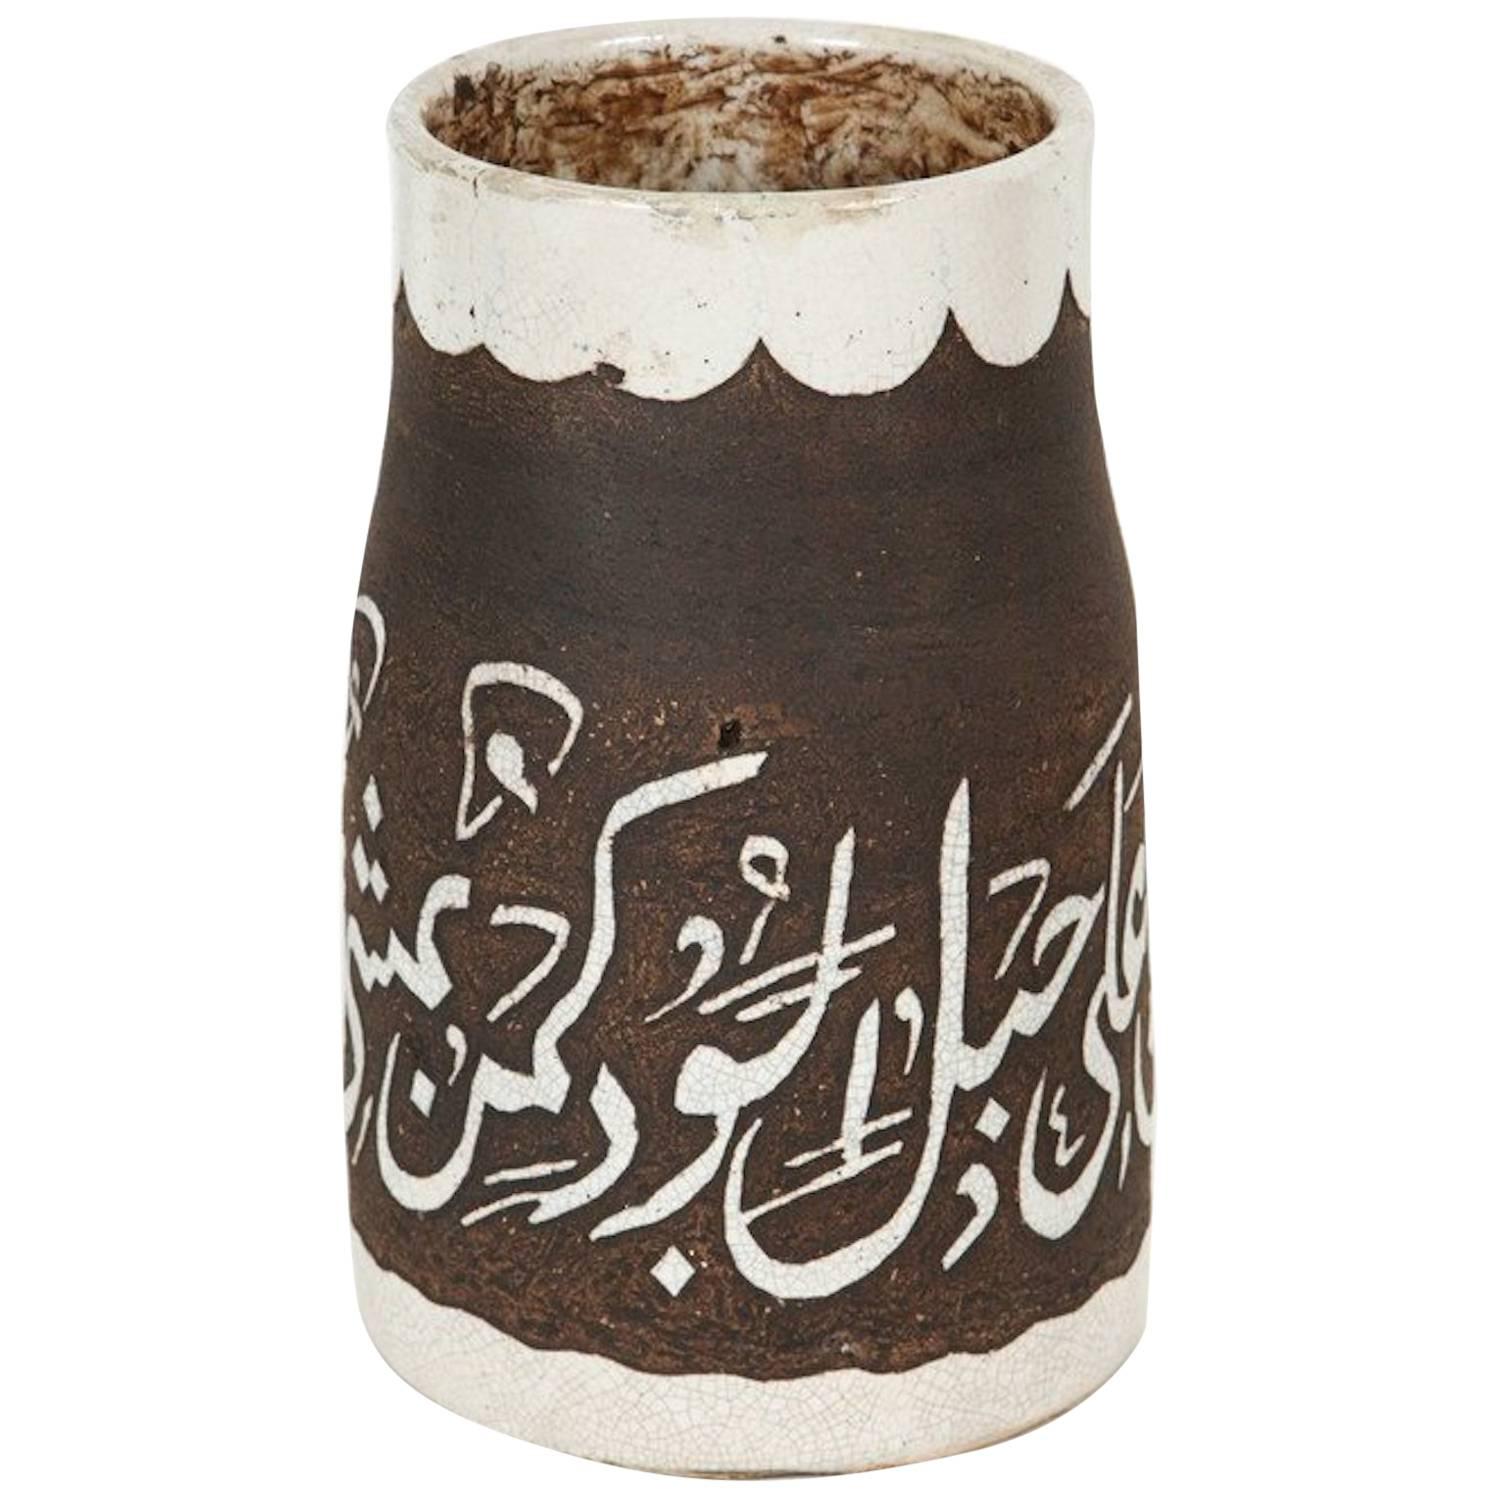 1940er Jahre Brown und Elfenbein Hand-Crafted marokkanische Keramik-Vase